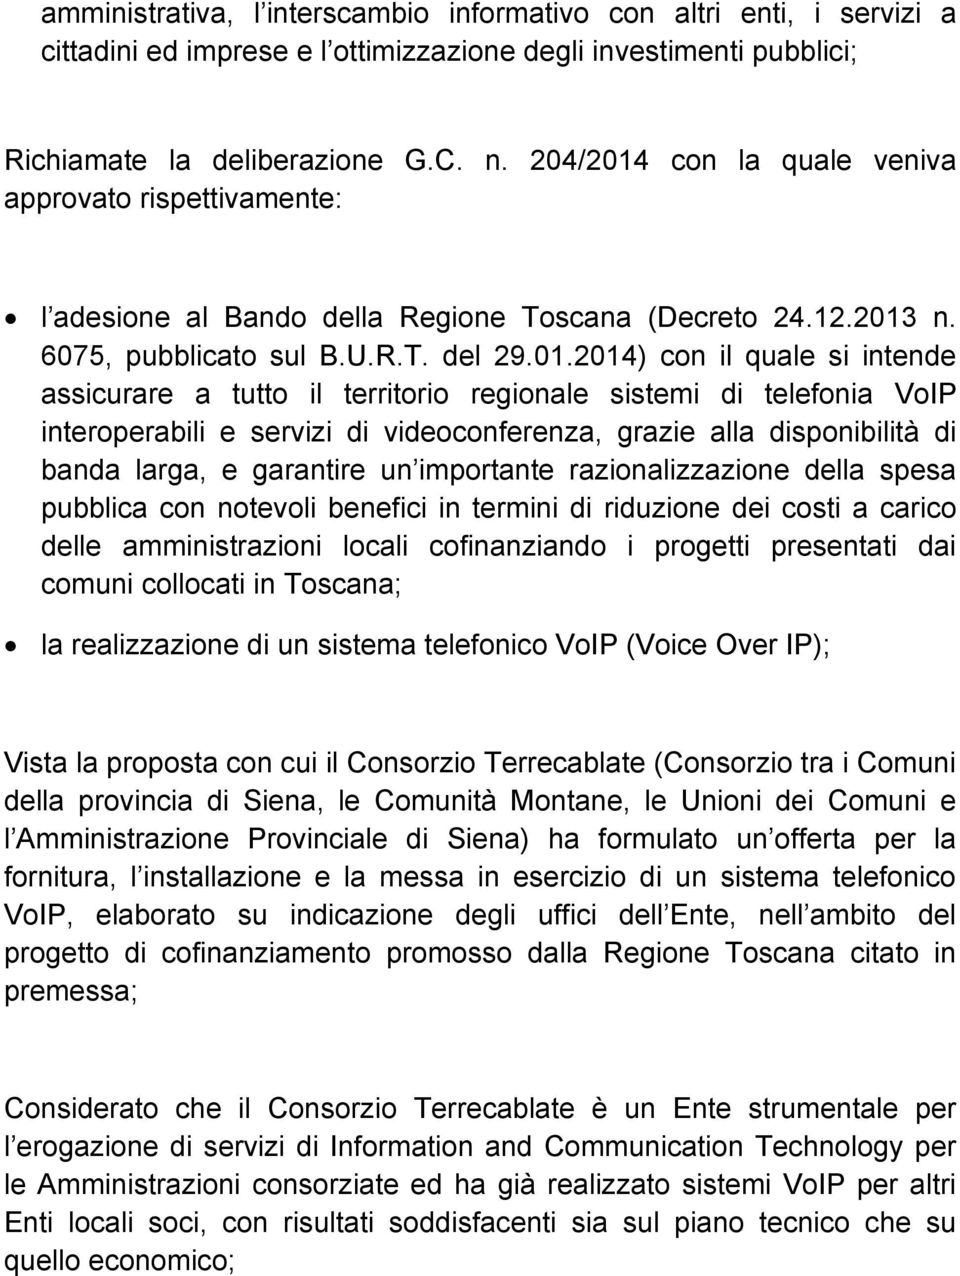 con la quale veniva approvato rispettivamente: l adesione al Bando della Regione Toscana (Decreto 24.12.2013